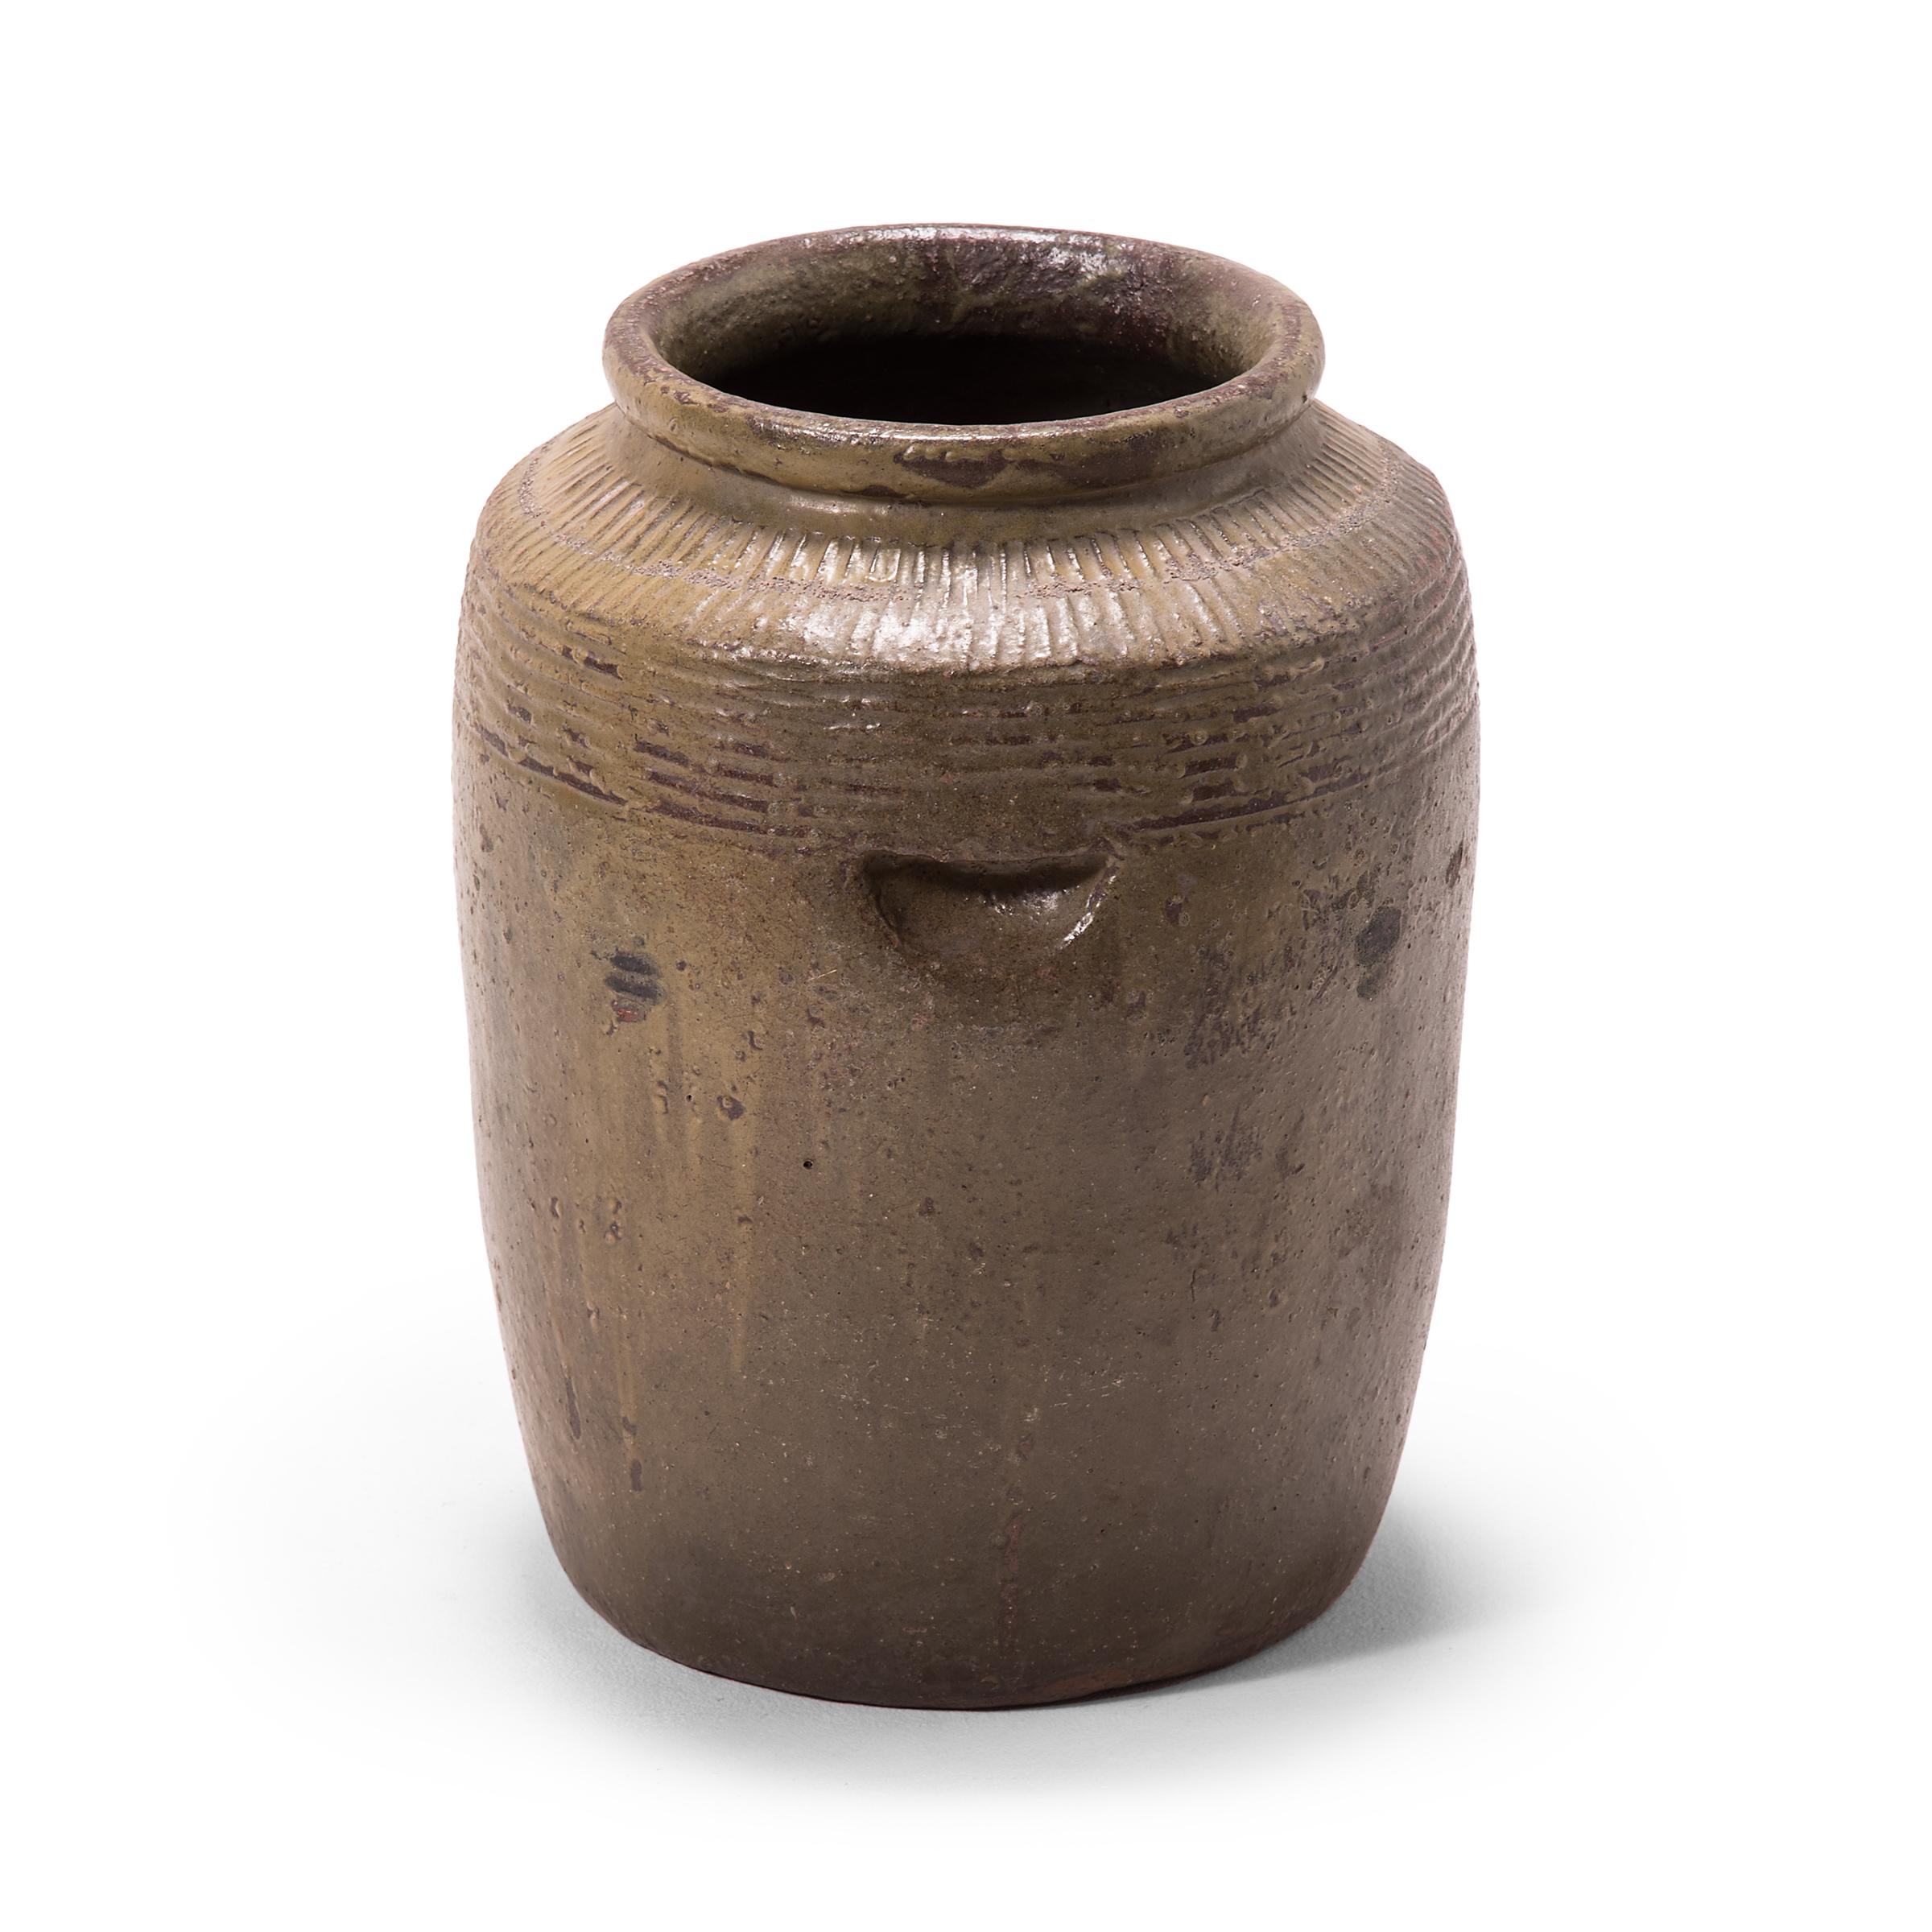 Utilisé à l'origine pour mariner les aliments, ce pot en céramique du début du XXe siècle est recouvert à l'intérieur et à l'extérieur d'une glaçure grise et chaude. Les stries décoratives qui ornent les épaules élevées de la jarre manipulent la